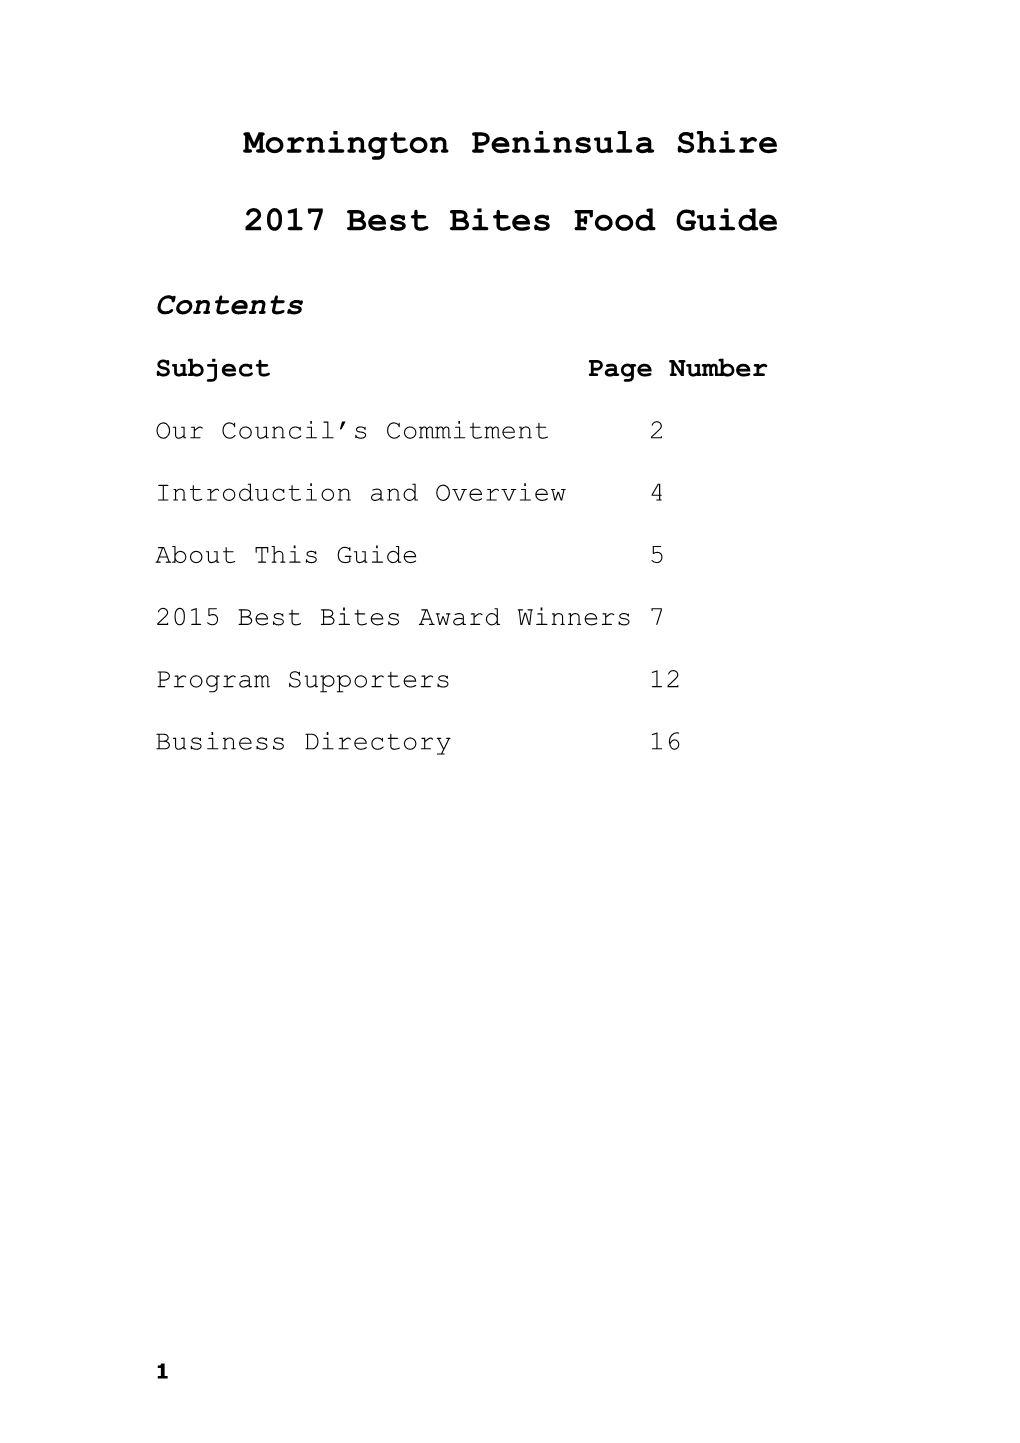 Best Bites Food Guide